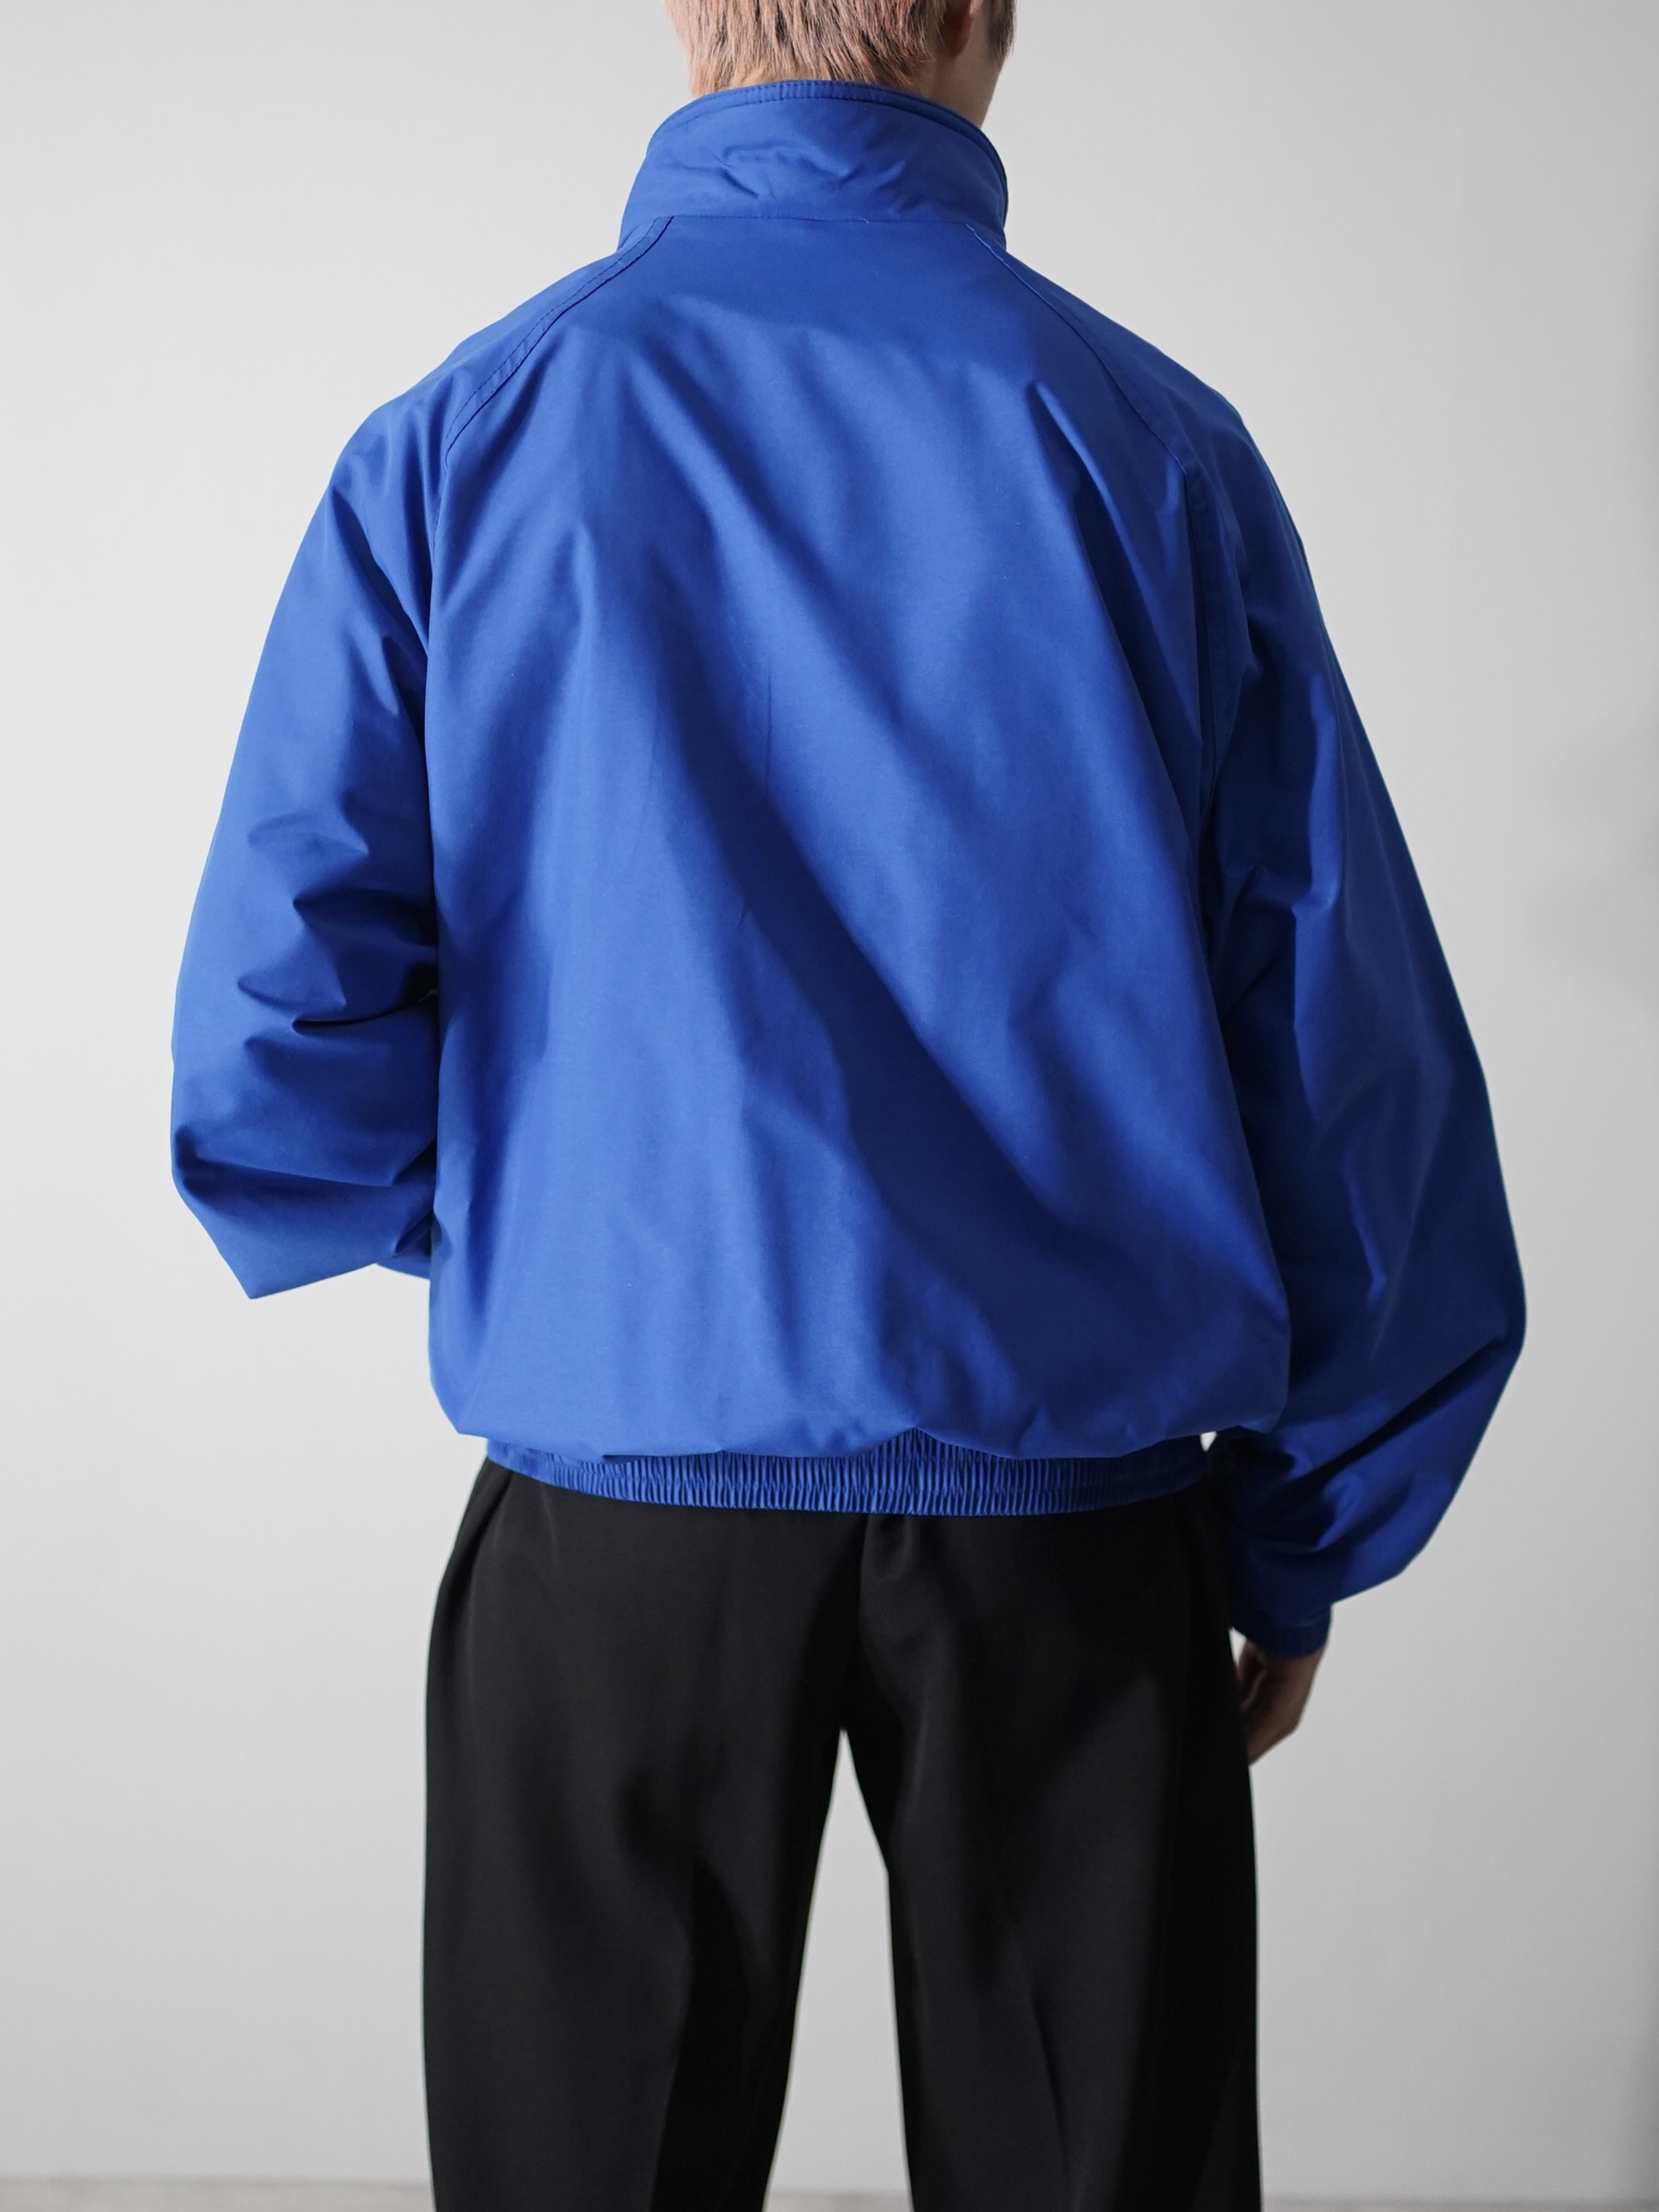 SPORTSMASTER "FREEMASON" supplex nylon shell jacket / Made in USA